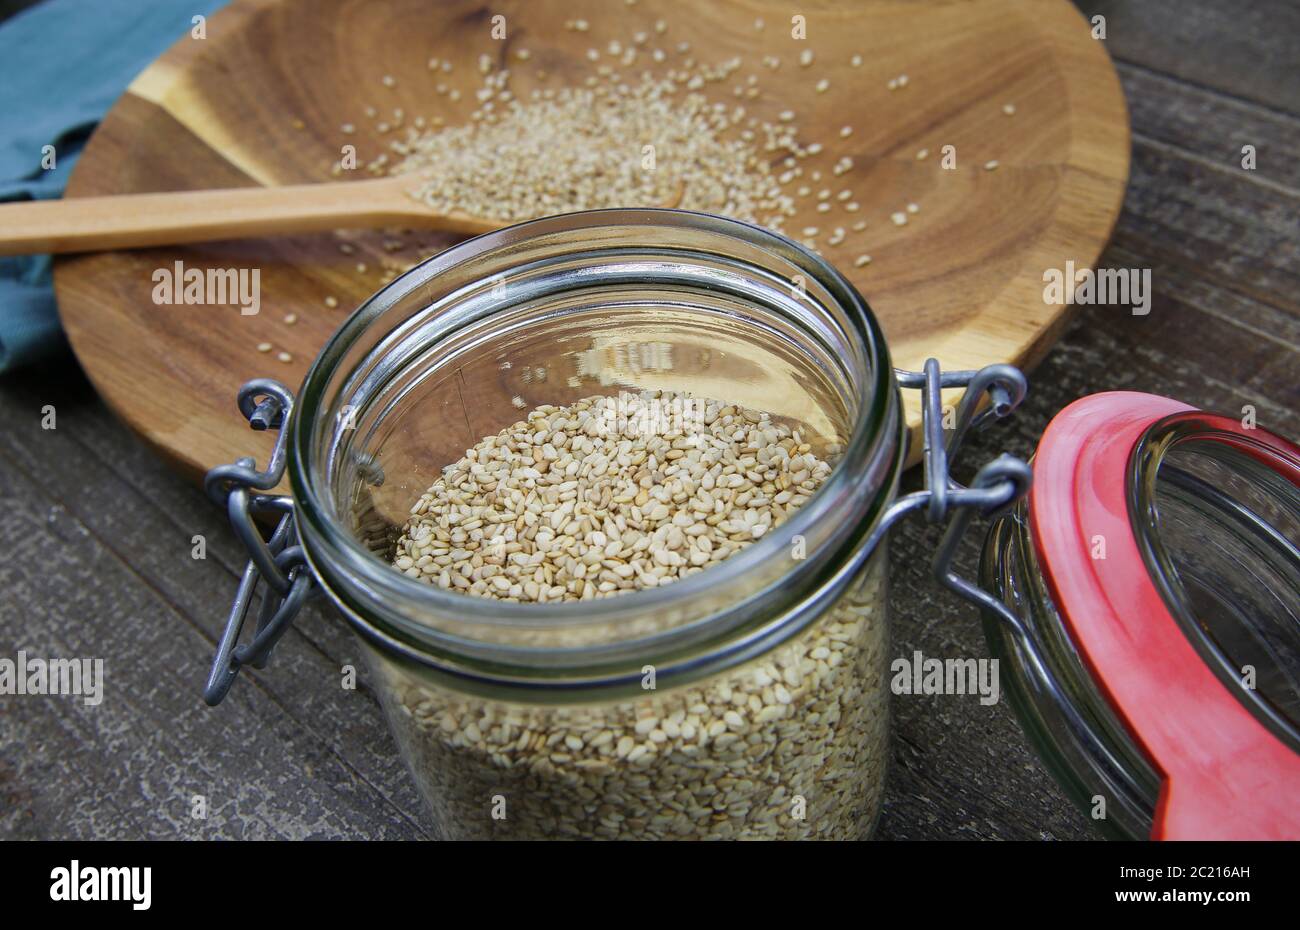 Vista sul vasetto di conservazione con anello in gomma rossa su semi di sesamo grezzi isolati su cucchiaio e piastra in legno Foto Stock